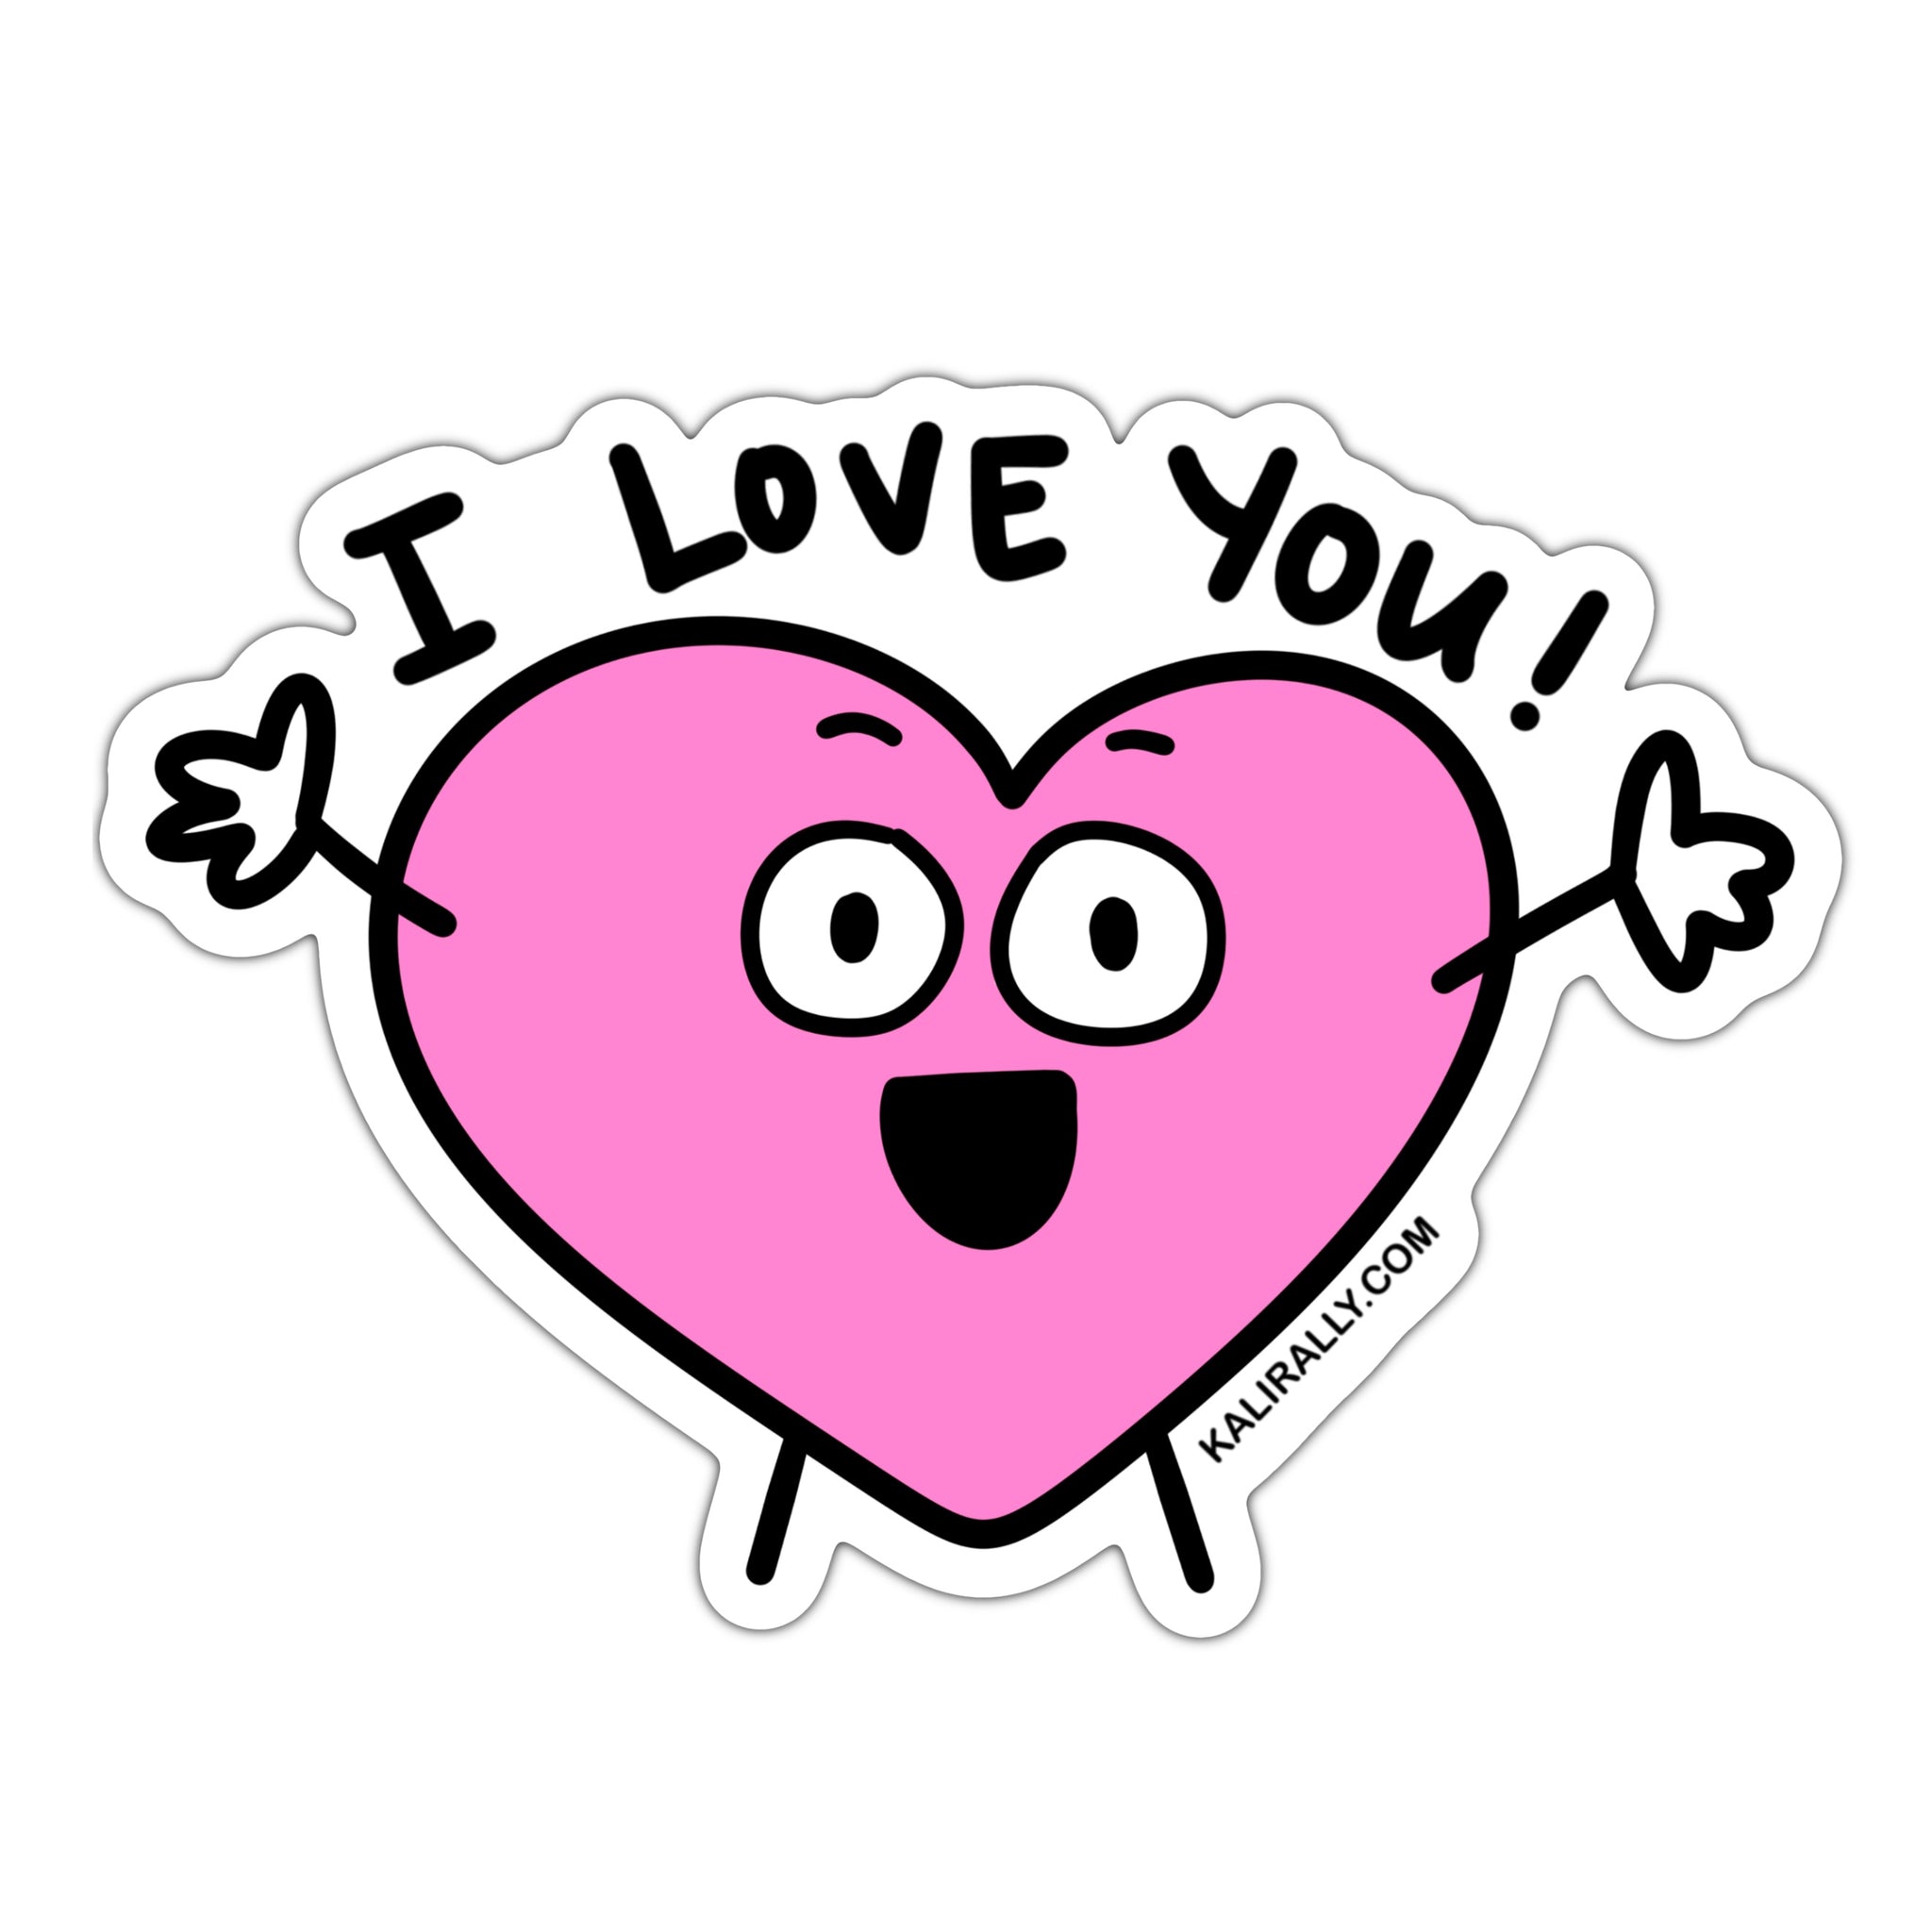 I love you sticker, emoji heart sticker, valentine sticker for daughter, waterproof vinyl sticker